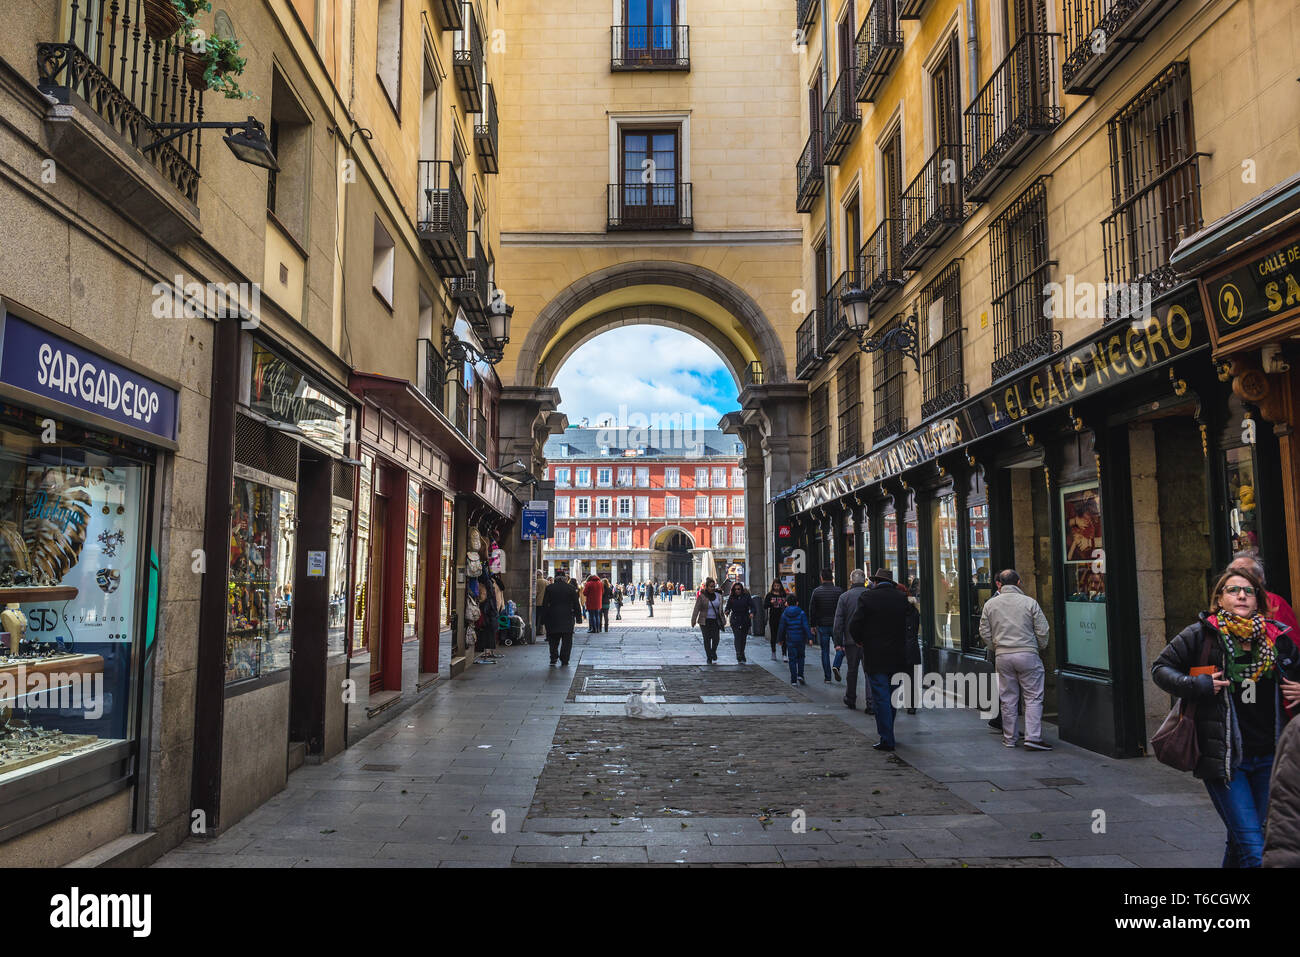 Calle de la Sal - Sel Street - passage à la Plaza Mayor - place principale de Madrid, Espagne Banque D'Images